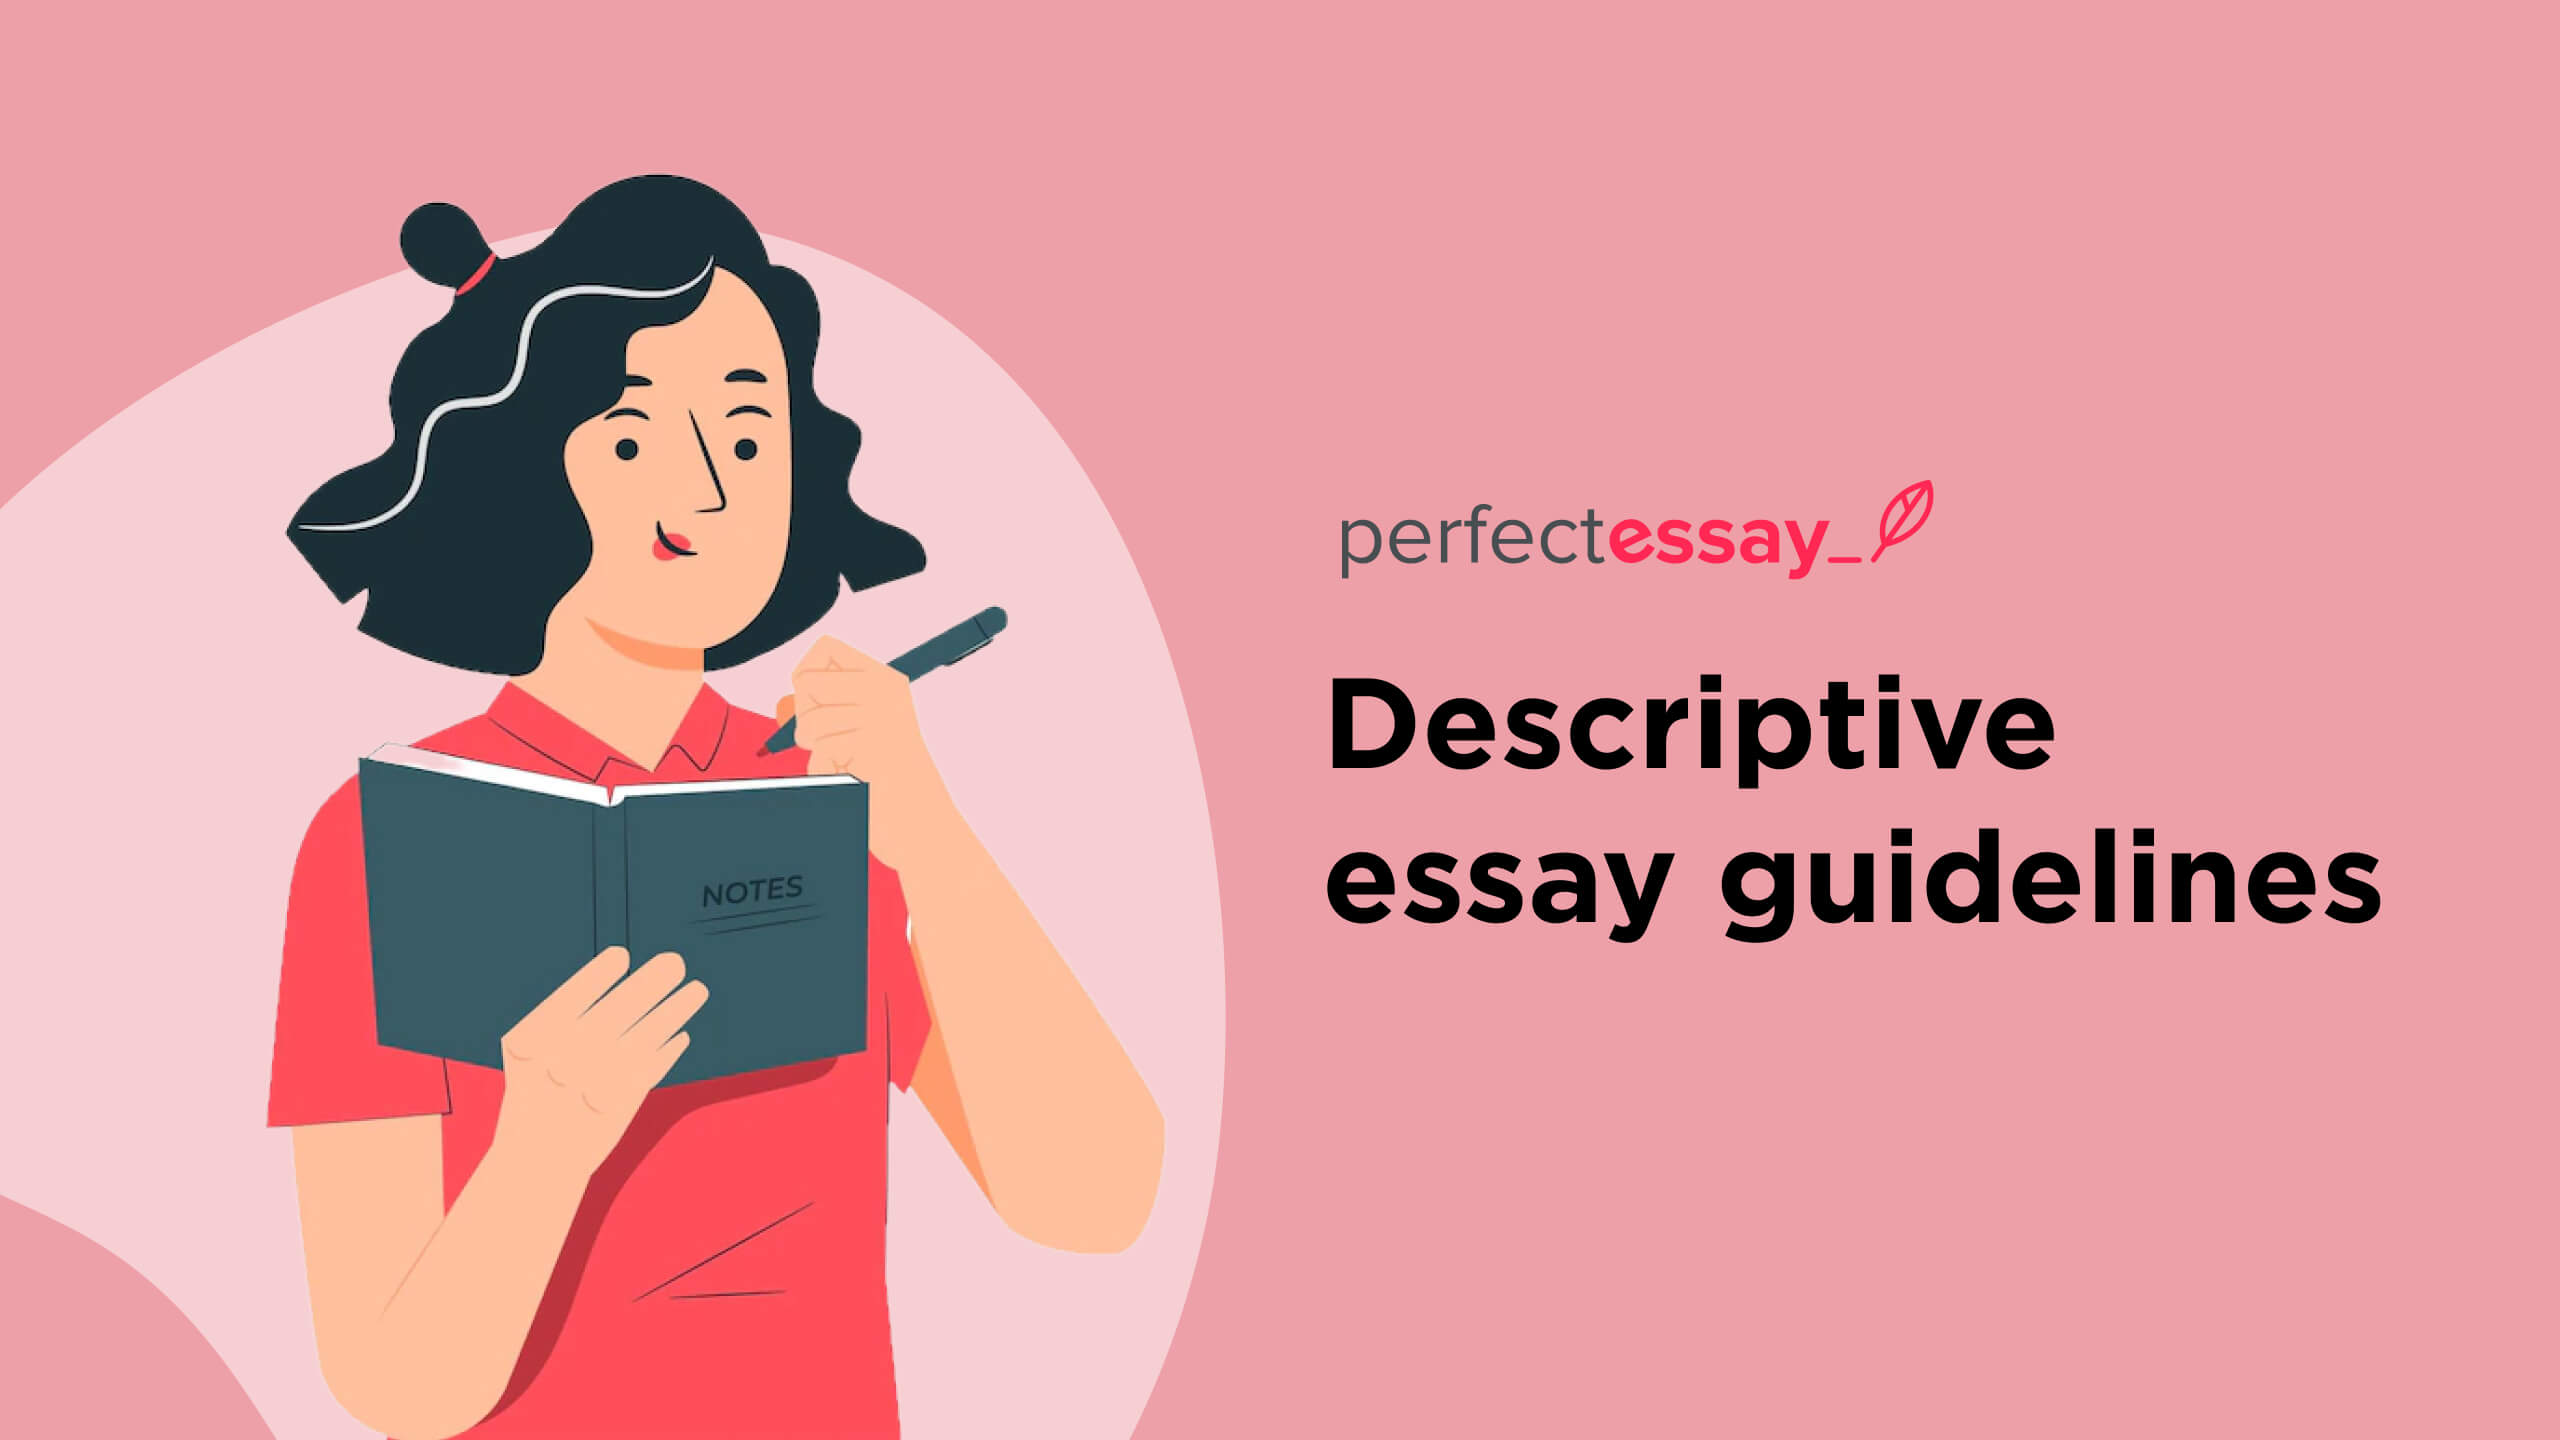 Descriptive essay guidelines